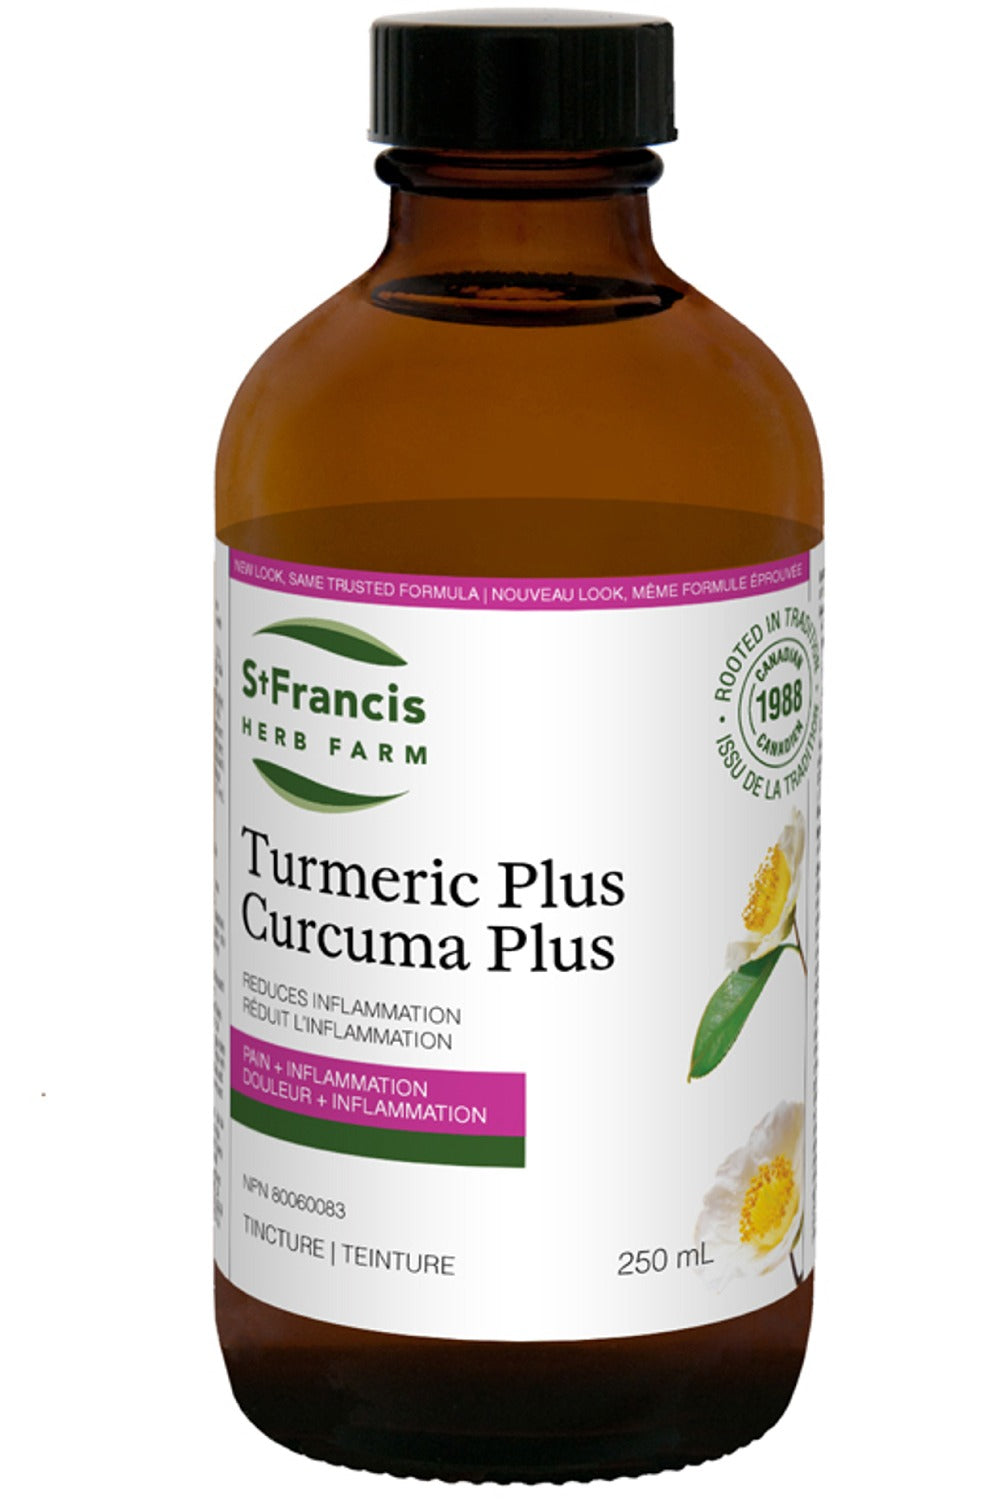 ST FRANCIS HERB FARM Turmeric Plus (250 ml)